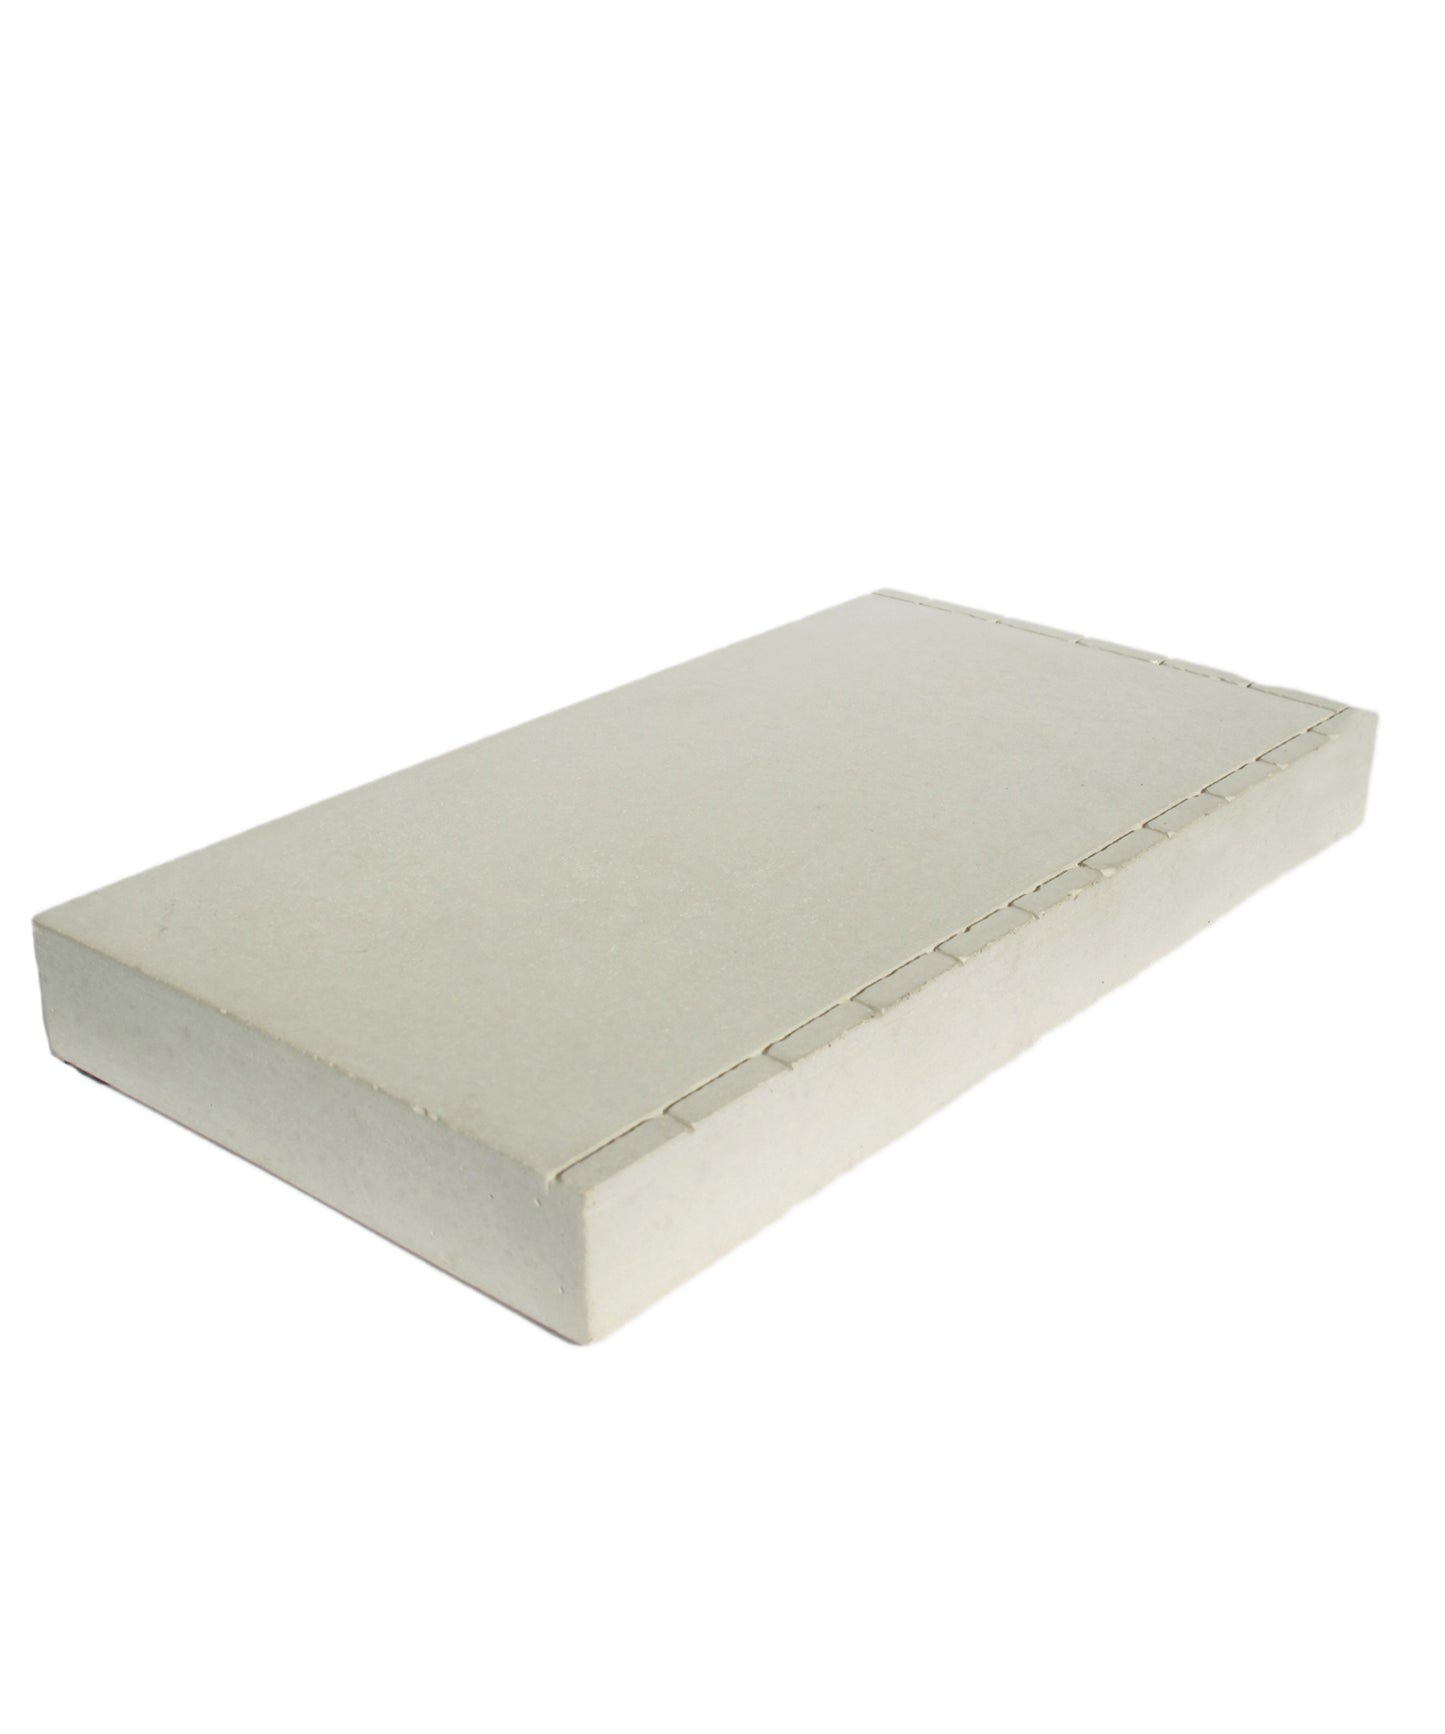 vitium-rampa-para-fingerboard-manual-park-hechas-de-cemento-para-la-practica-del-fingerskate-en-casa.